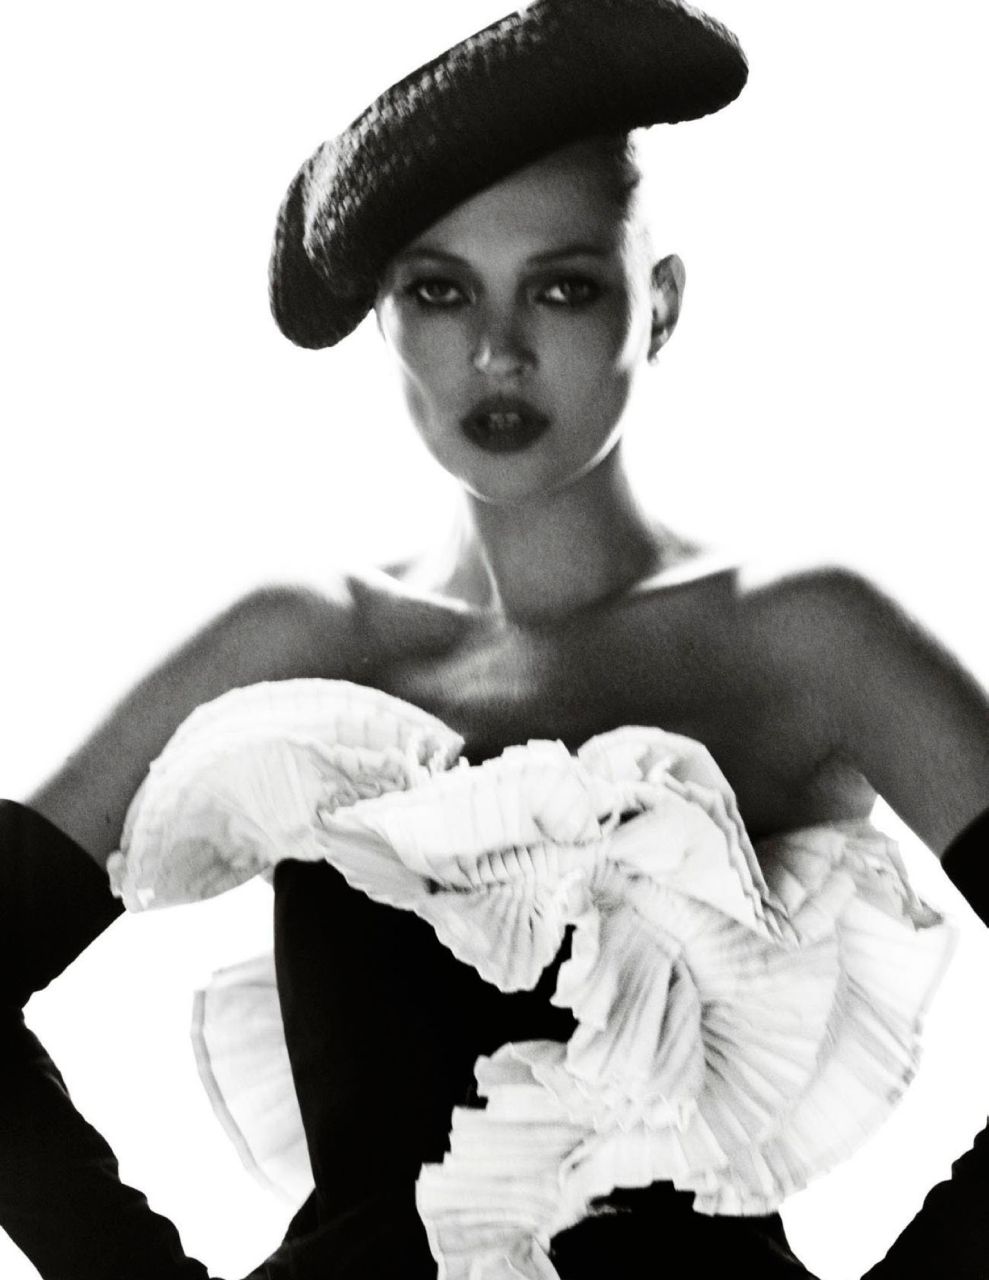 Kate Moss i jej nagie piersi w grudniowym numerze hiszpanskiego Vogue